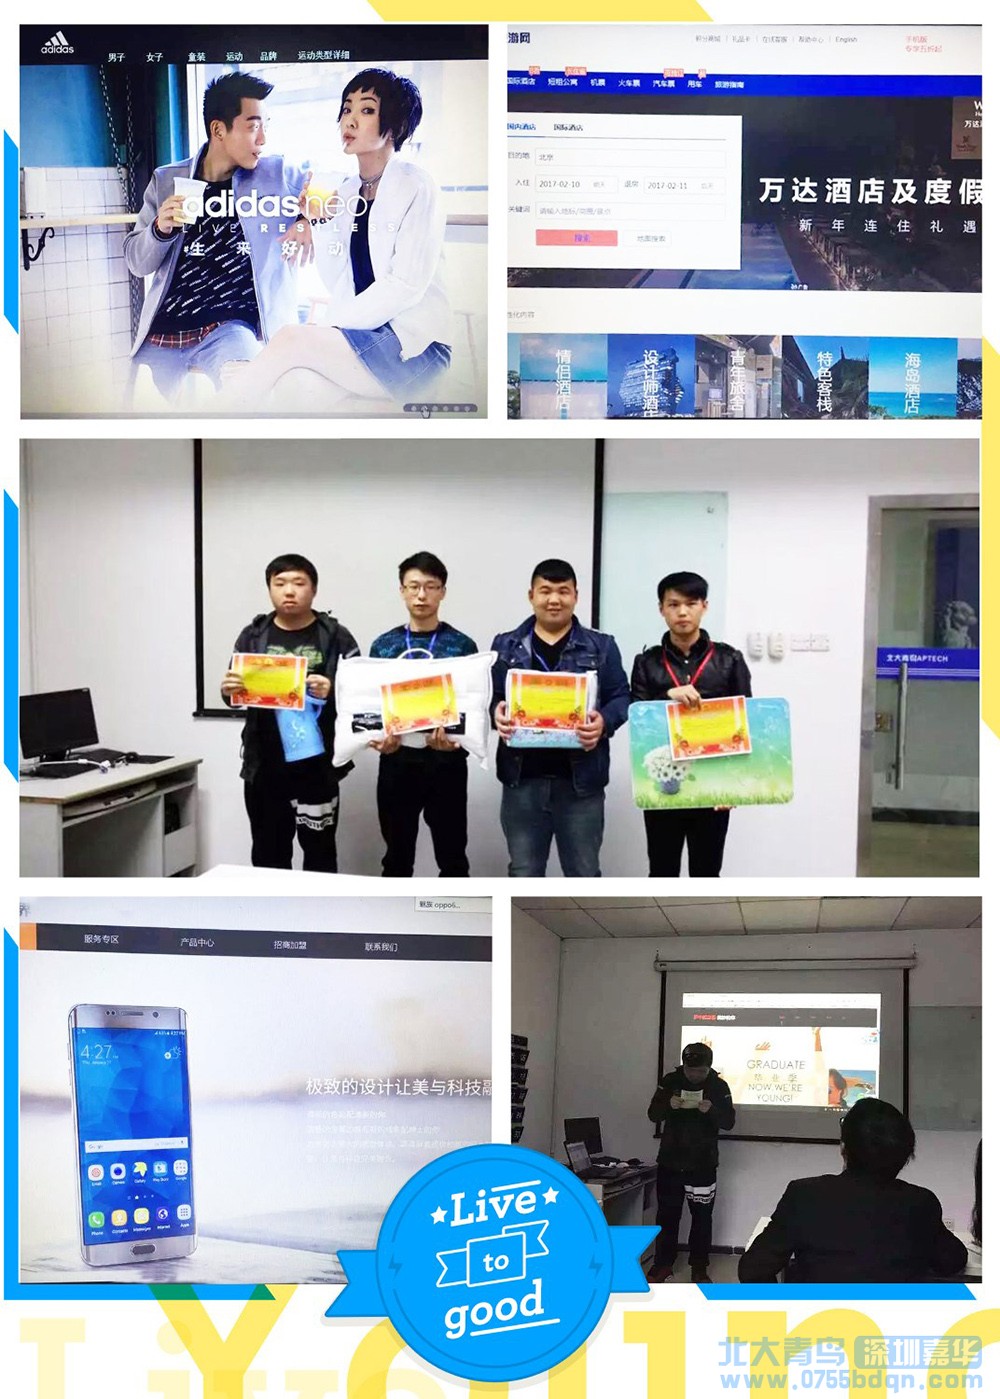 深圳嘉华学校软件开发专业T137班举行jQuery页面特效大赛